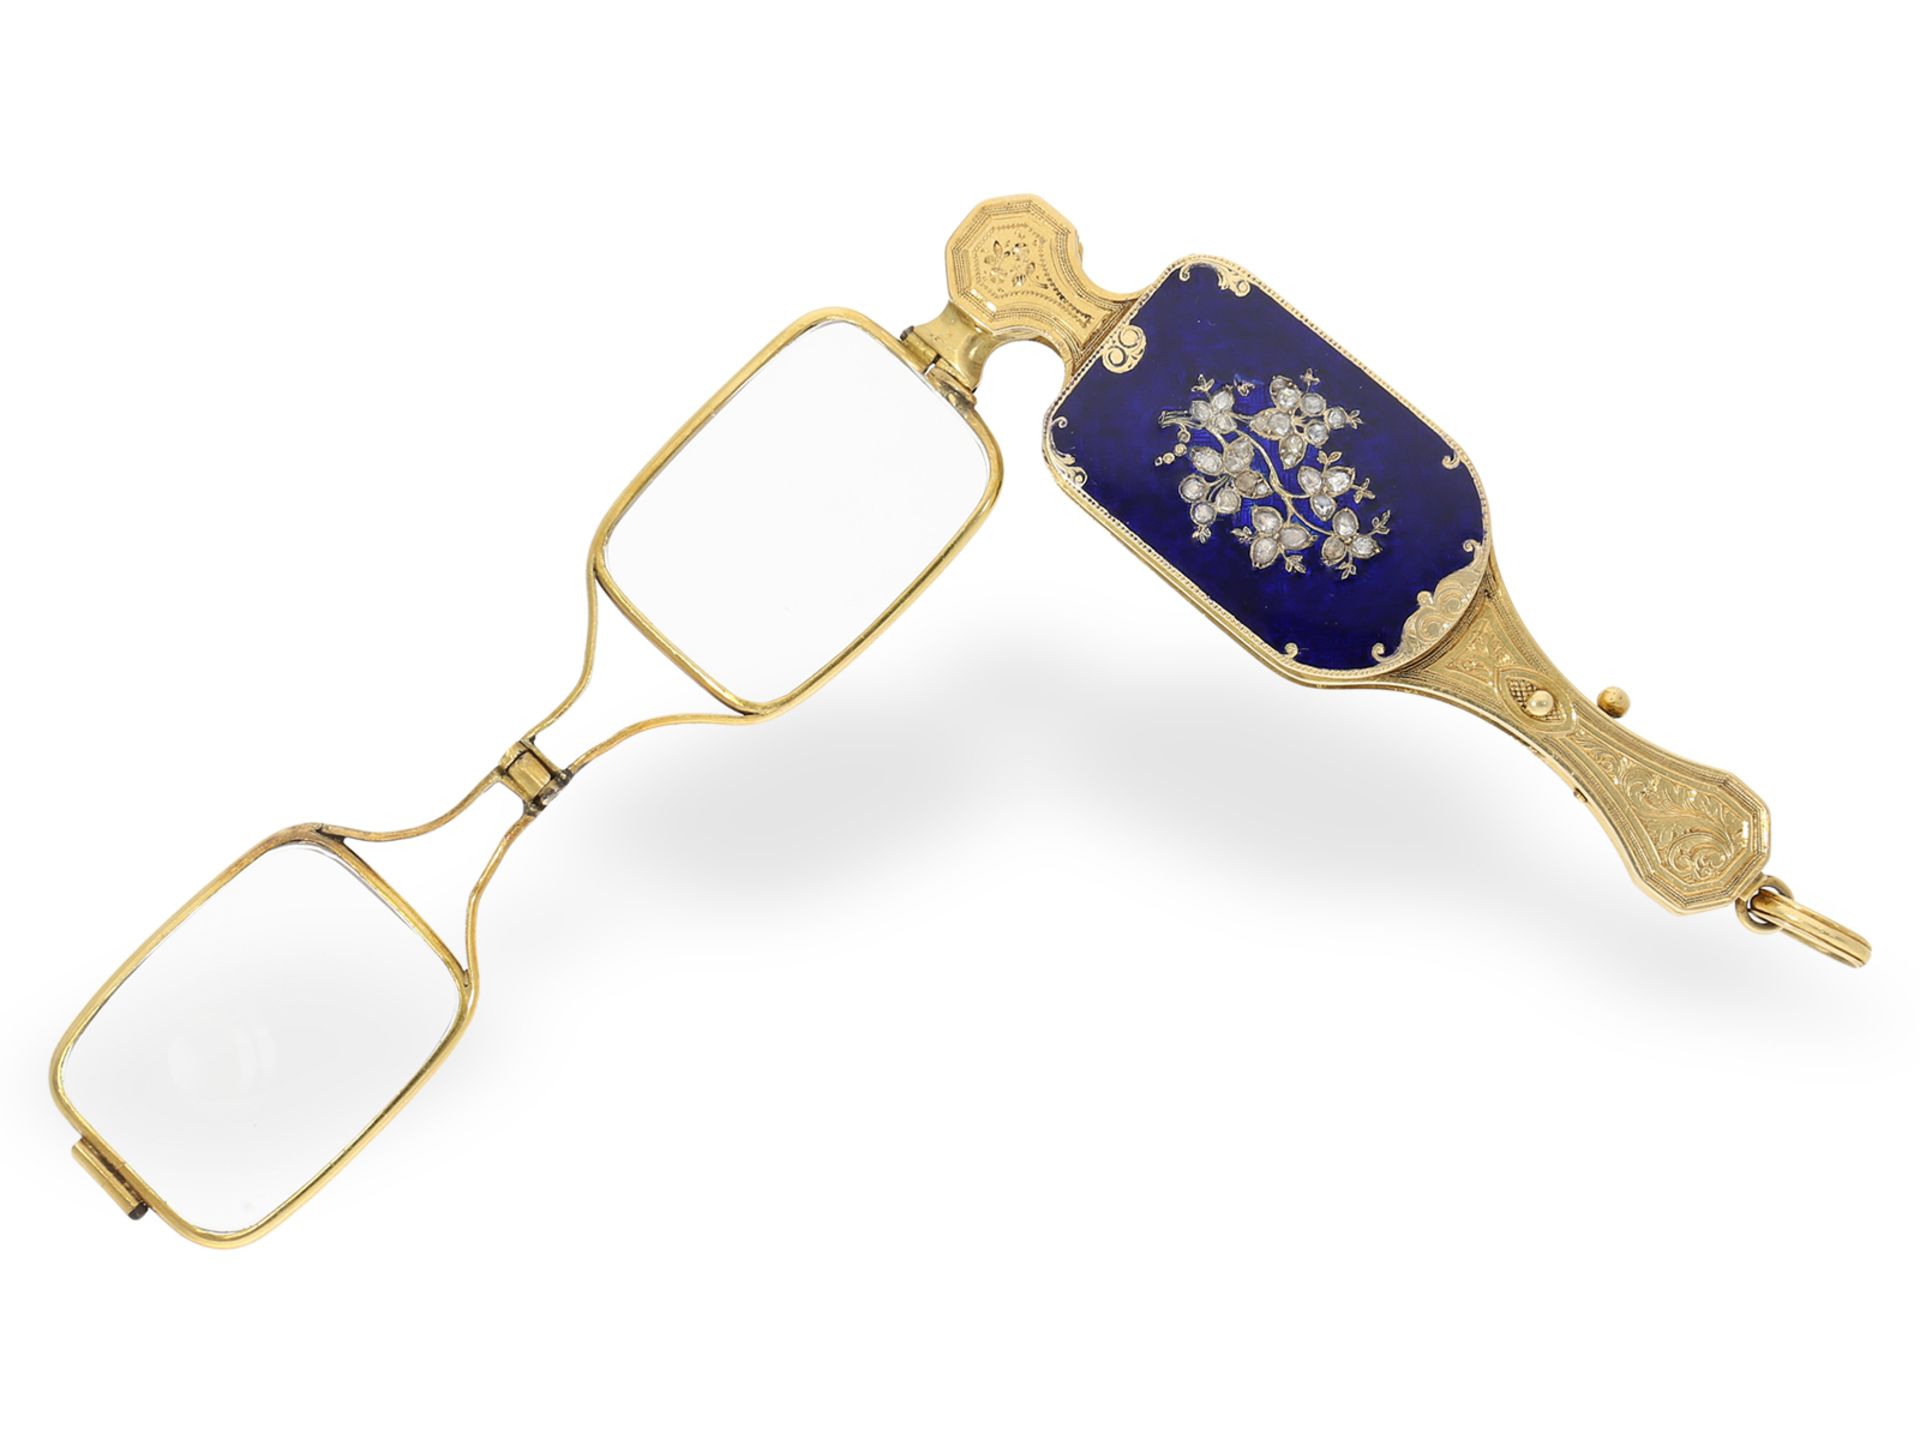 Czapek & Cie - Genewa, Biżuteryjne lorgnon z damskim zegarkiem, źródło: Karl-Heinz Cortrie GmbH